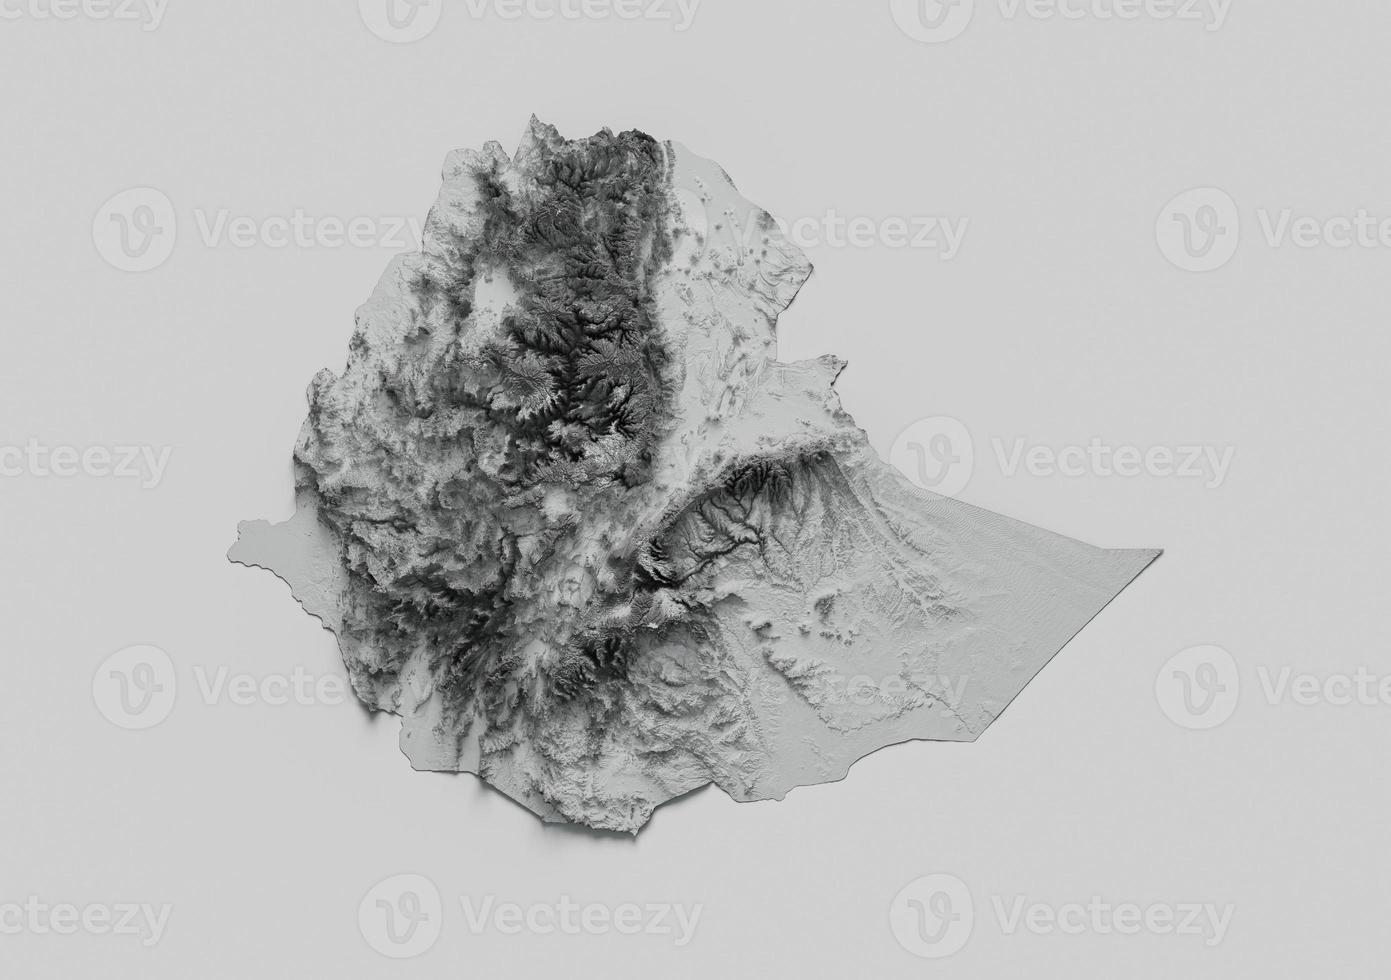 mapa da etiópia mapa de altura de cor cinza relevo sombreado no fundo preto e branco ilustração 3d foto